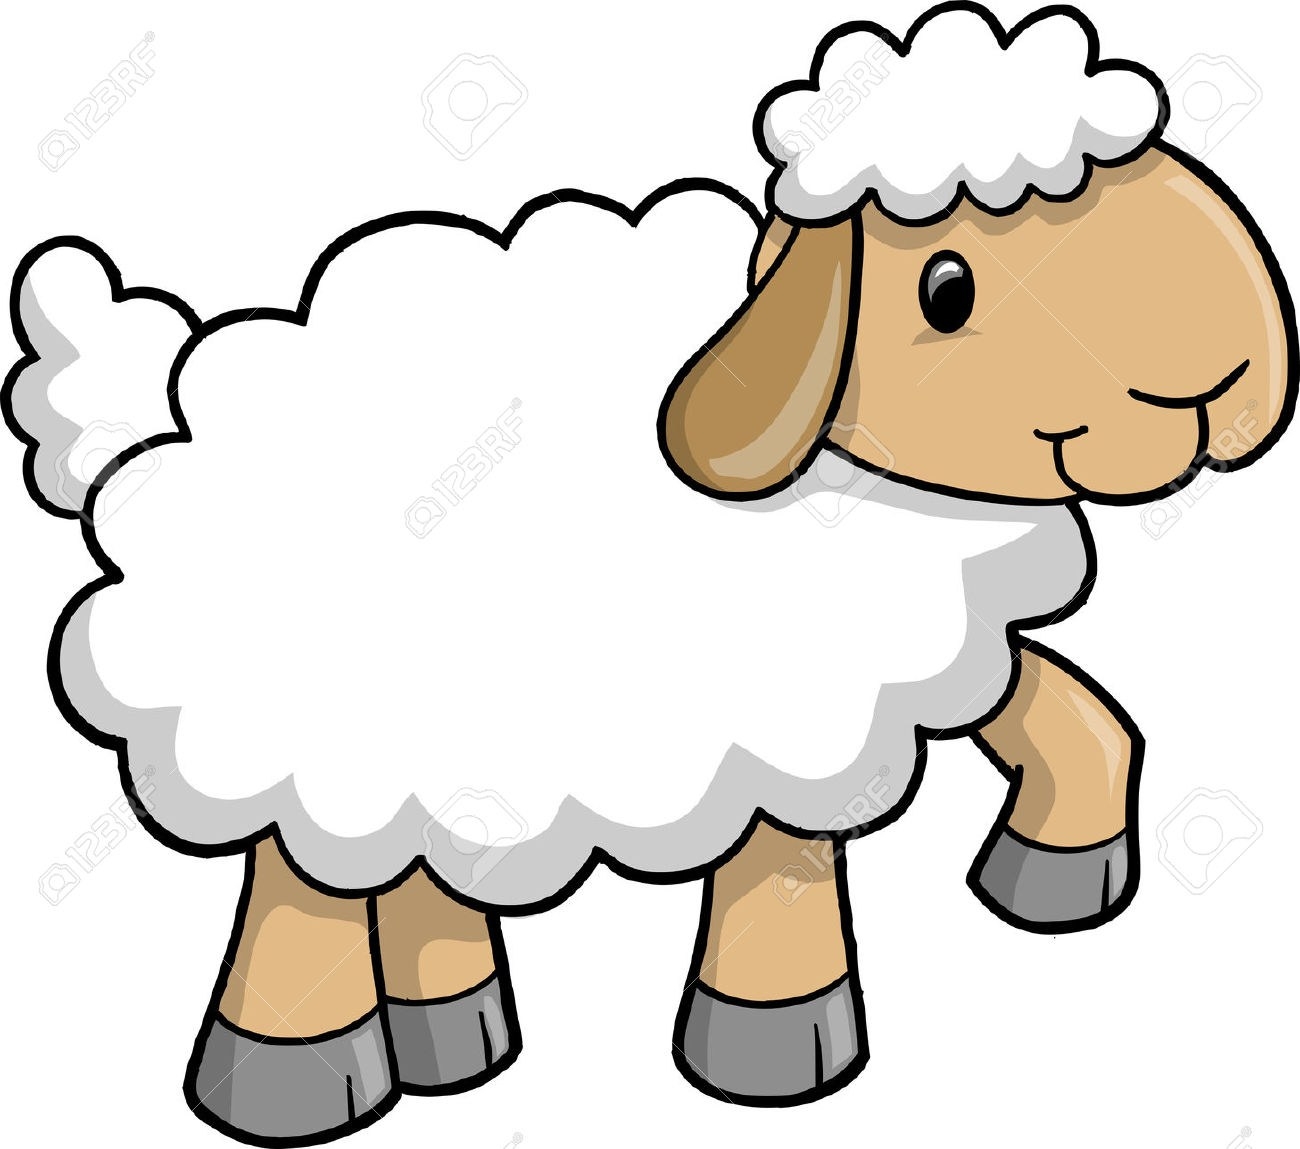 Realistic sheep drawing.